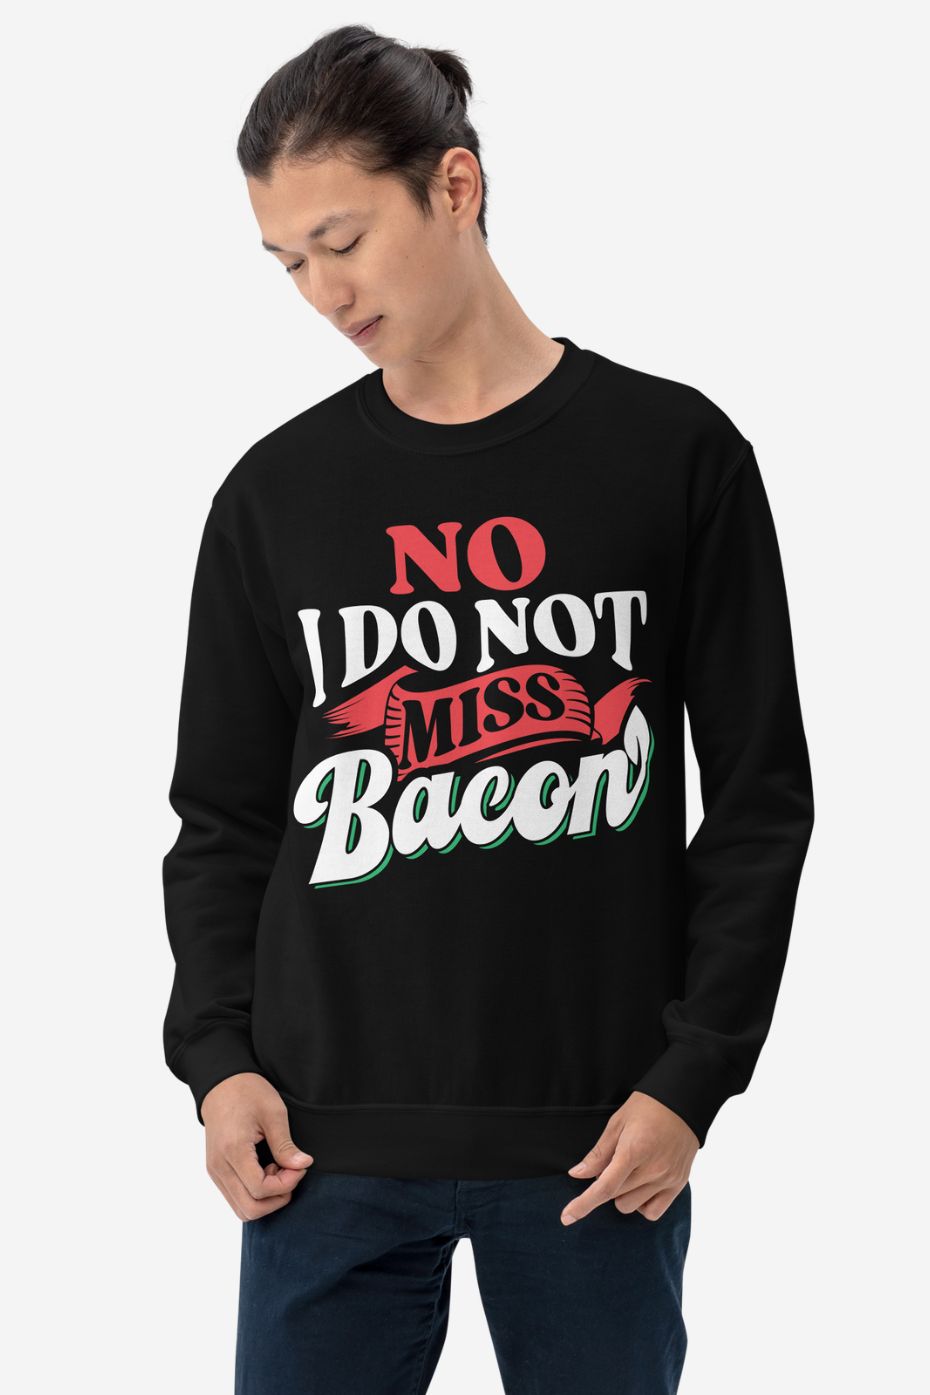 I Do Not Miss Bacon - Unisex Sweatshirt